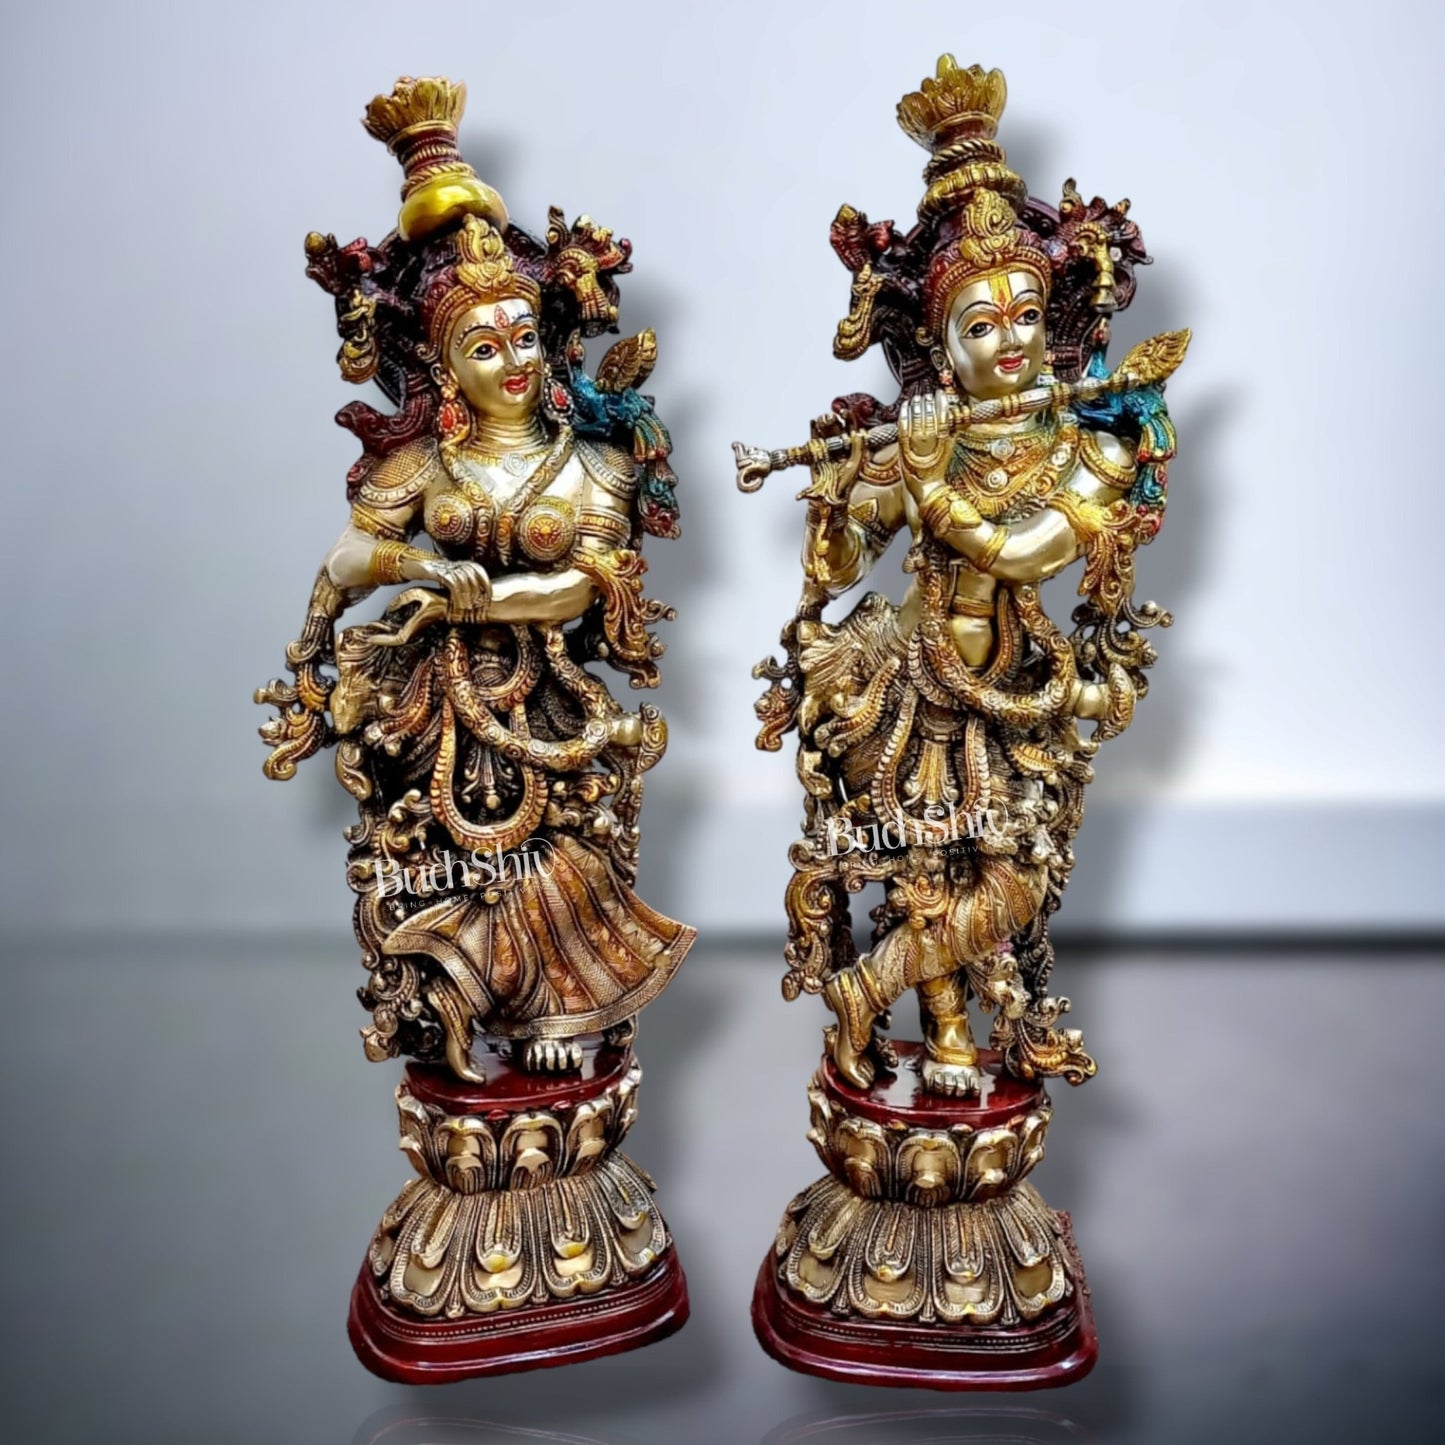 Handmade Radha krishna Idol - Exquisitely Hand-Painted - Budhshiv.com